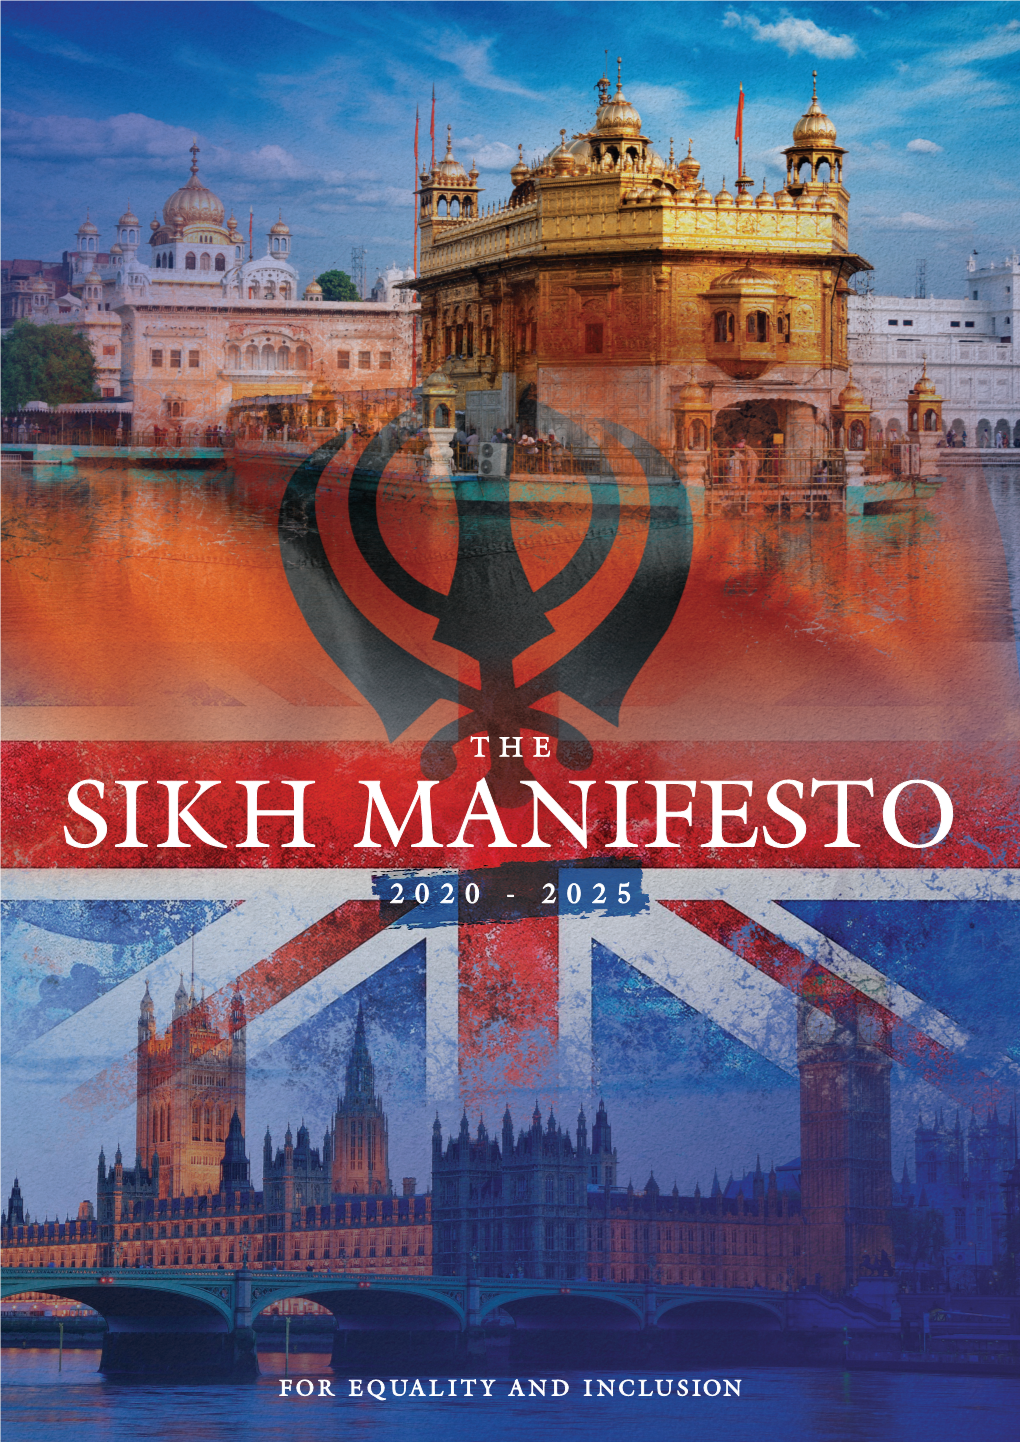 Sikh Manifesto 2020 - 2025